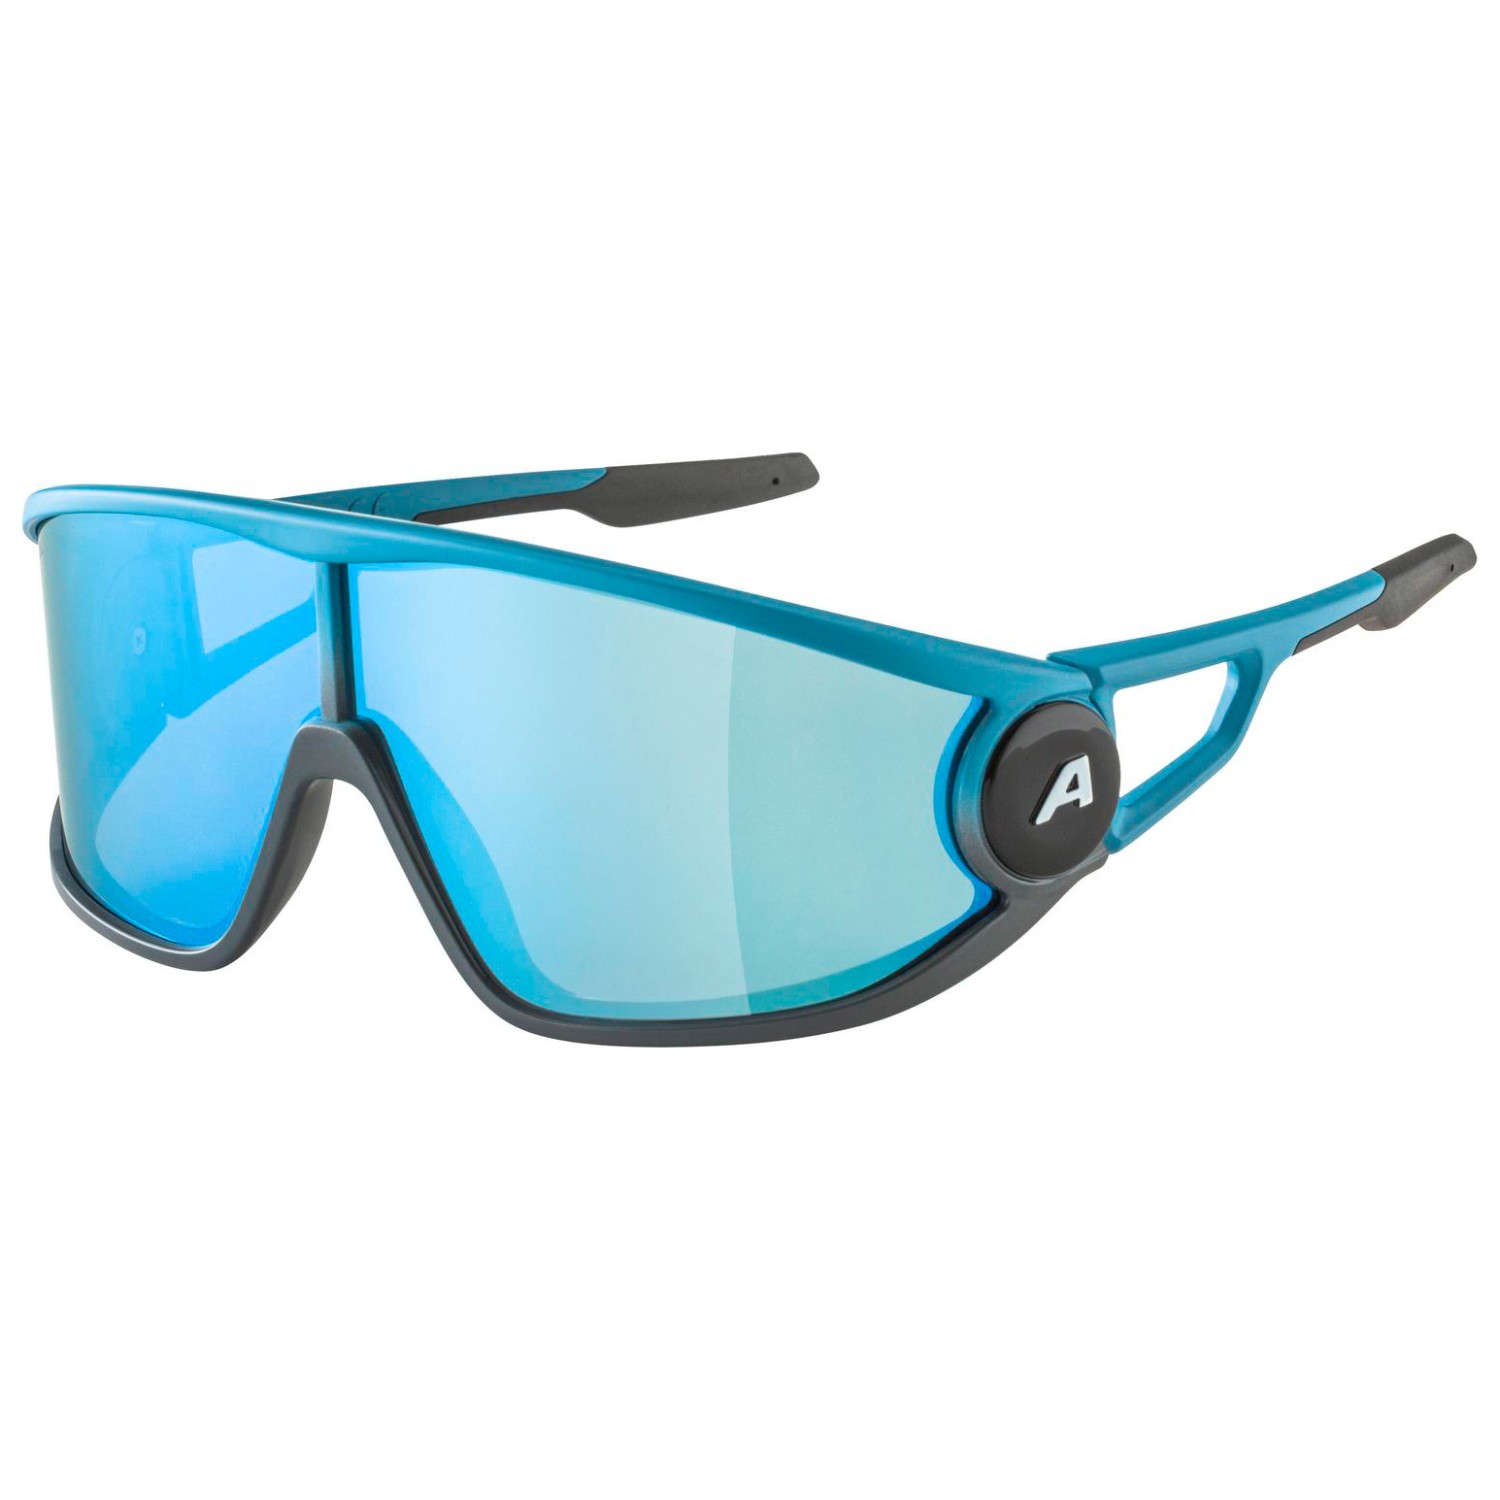 Солнцезащитные очки Alpina Legend Mirror Cat 3, цвет Smoke/Blue Matt очки солнцезащитные alpina luzy белый пурпурный зеркальный a8571310